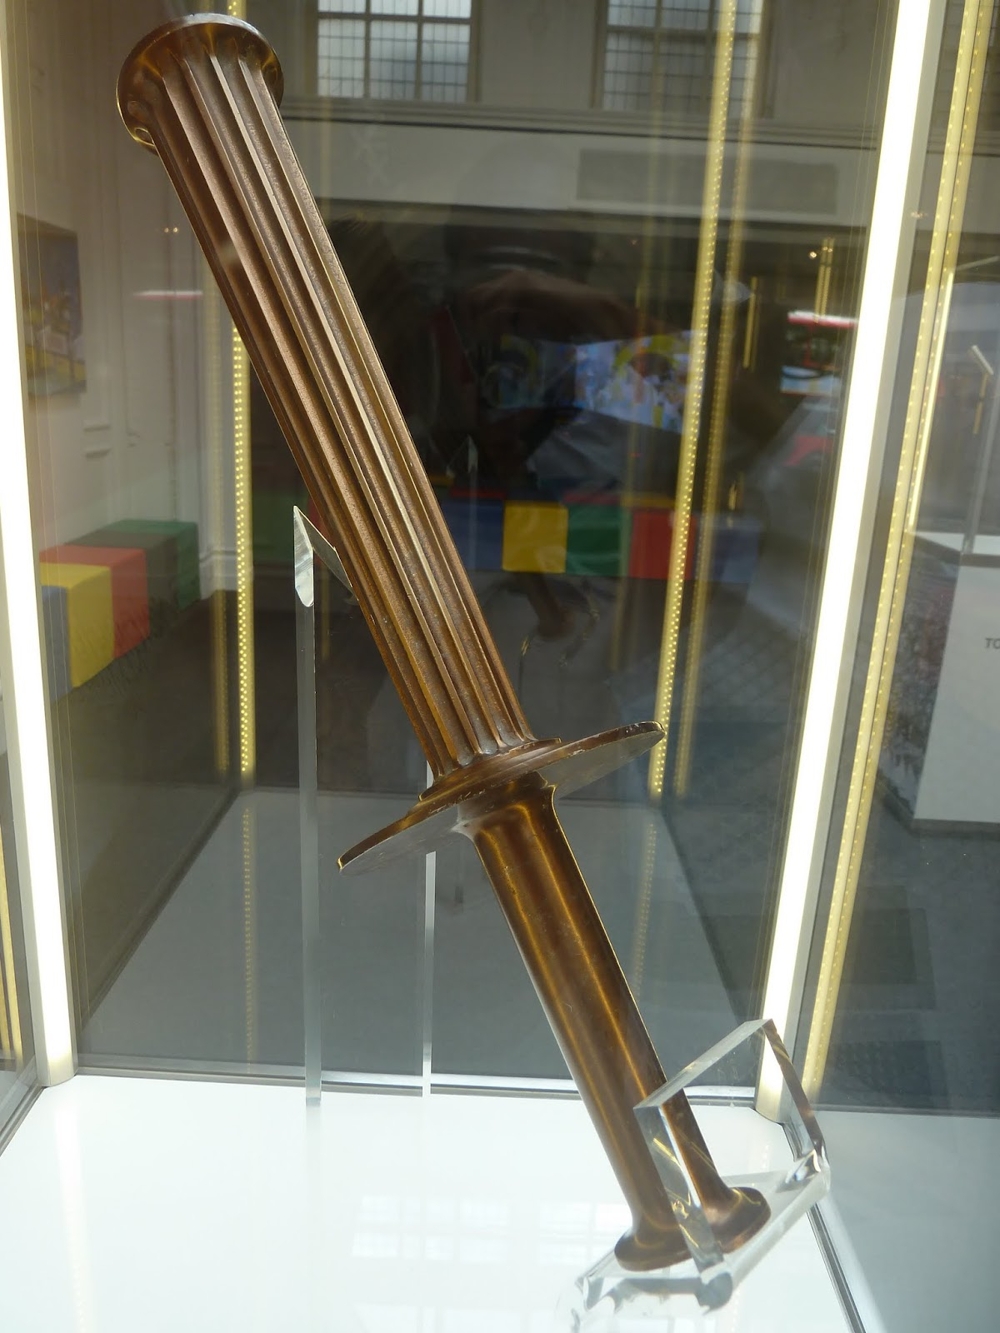 Выставка олимпийских факелов из коллекции Князя Монако  